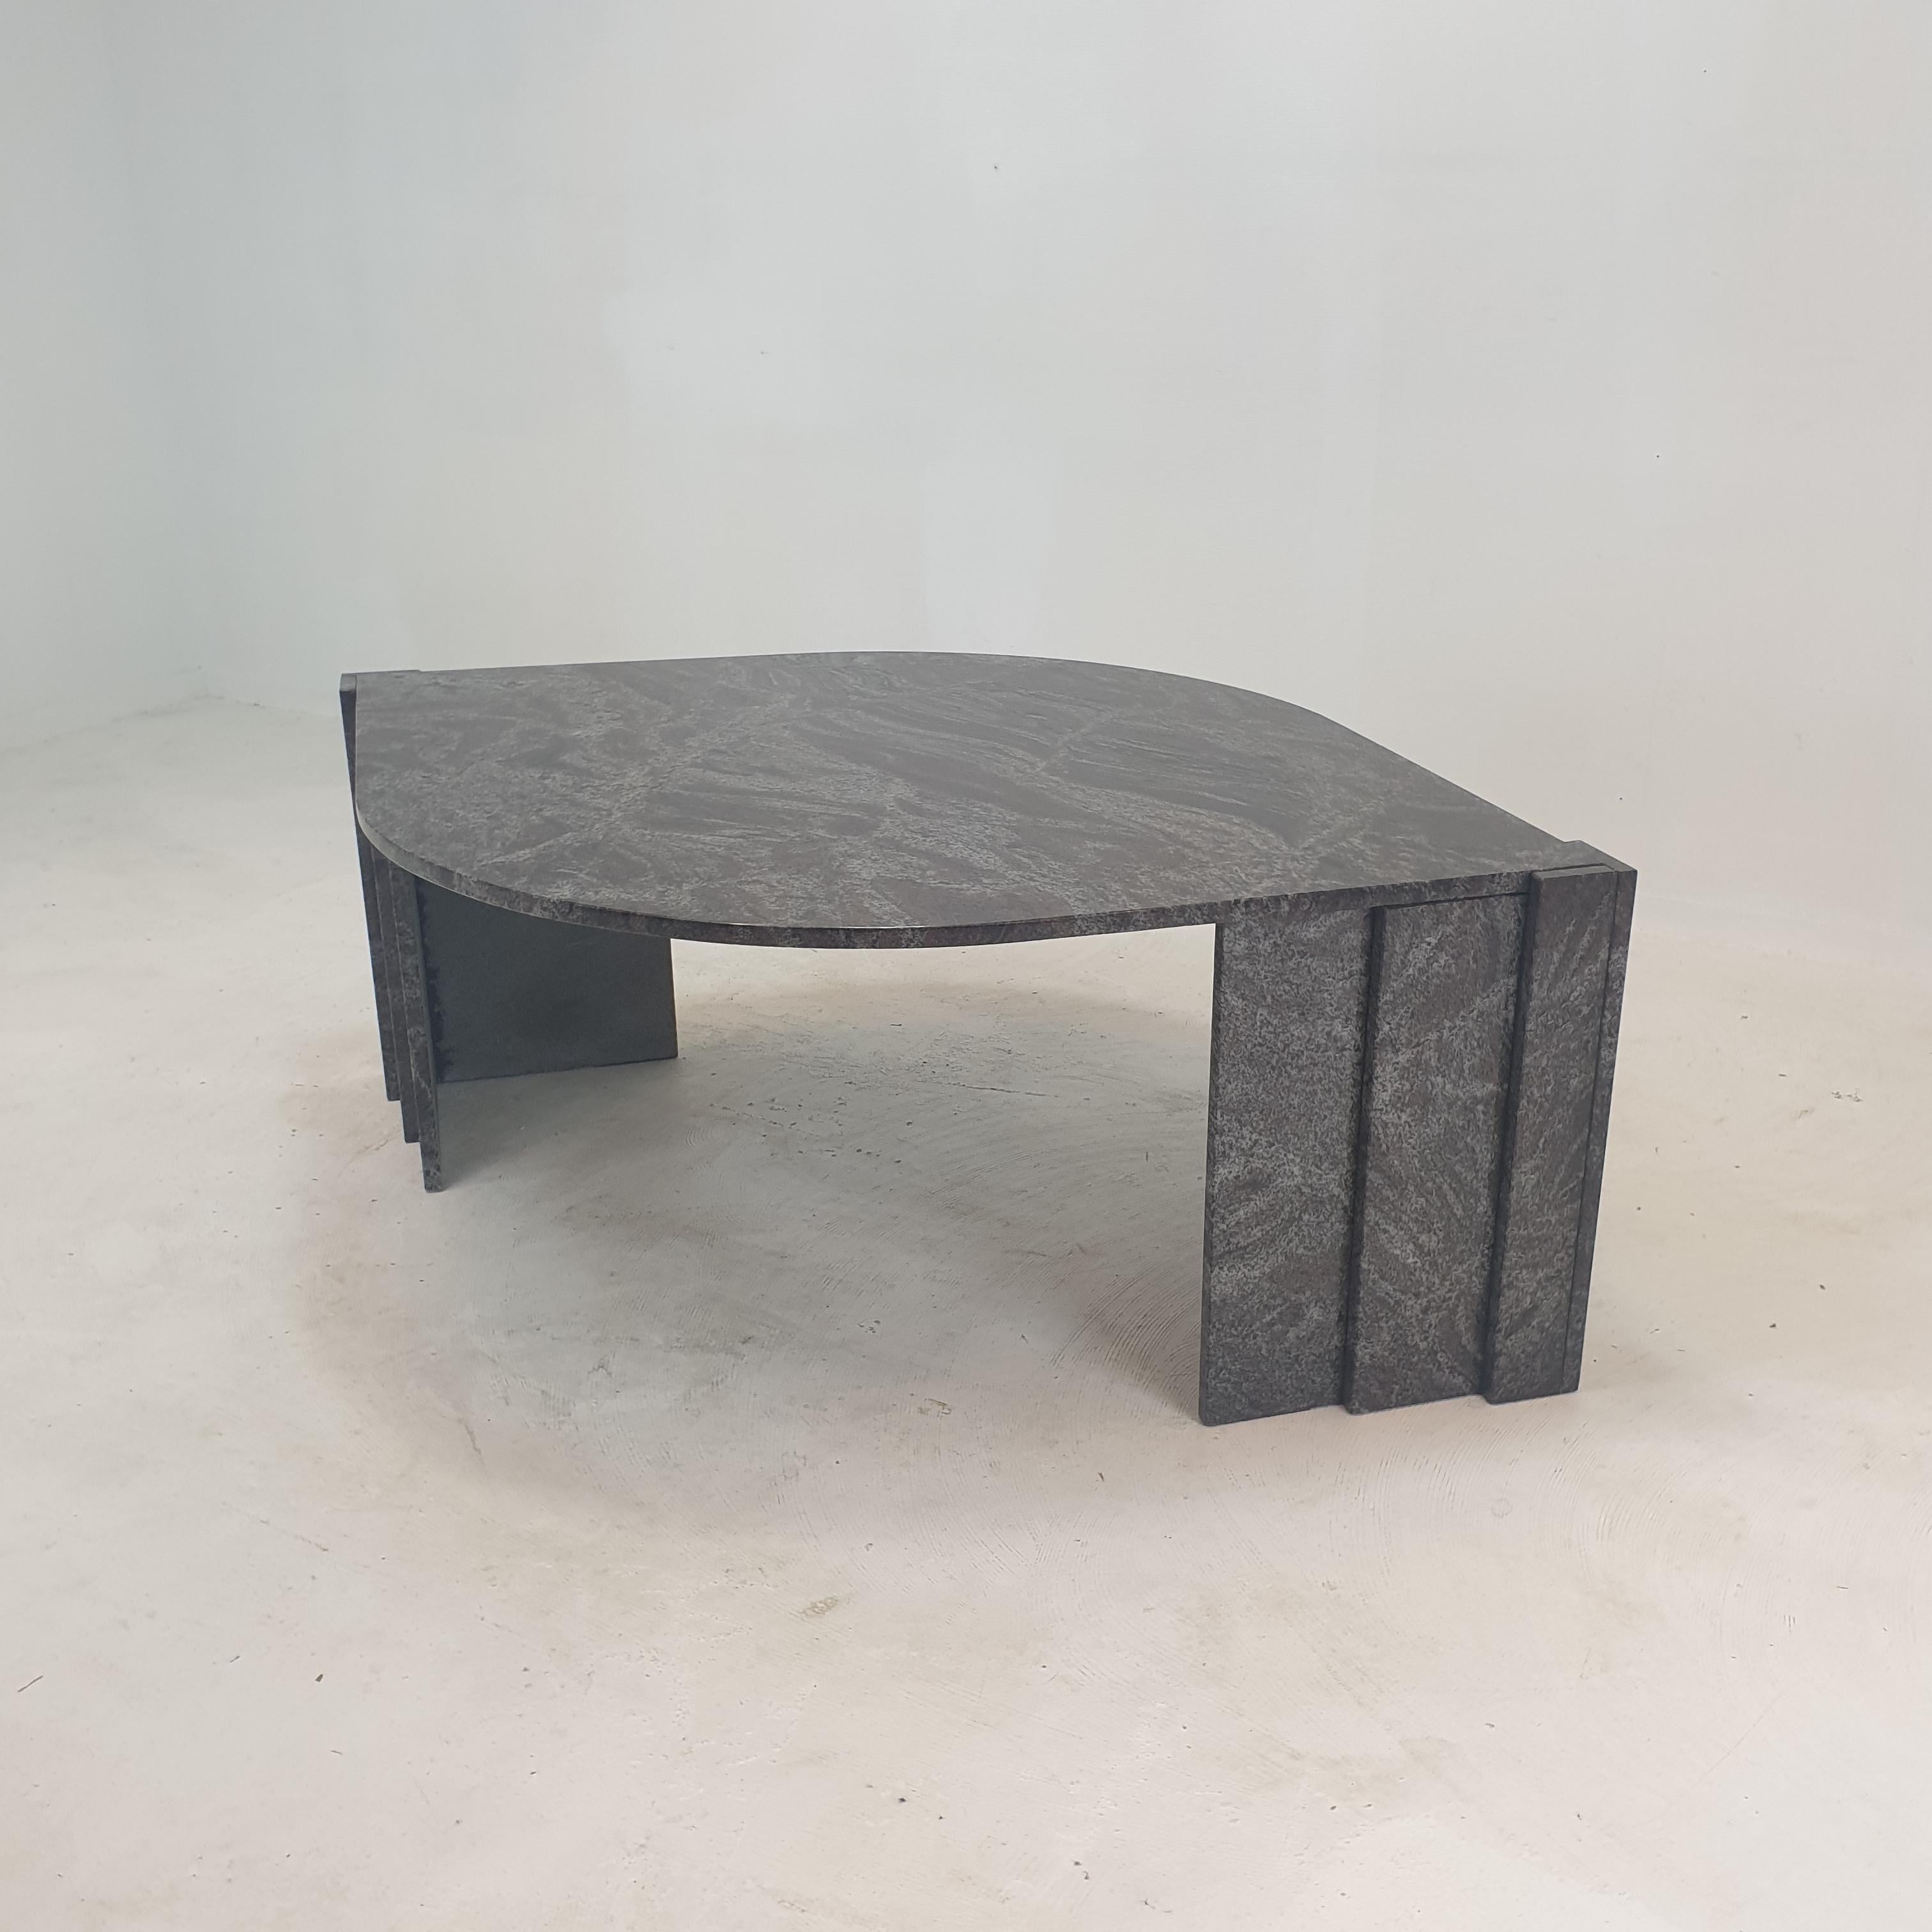 Très élégante table basse italienne fabriquée à la main en granit, années 1980.

Il a un très beau dessus en forme de goutte d'eau. 
Il est fait d'un beau granit.

La base est constituée de deux pièces distinctes.

Il présente les traces